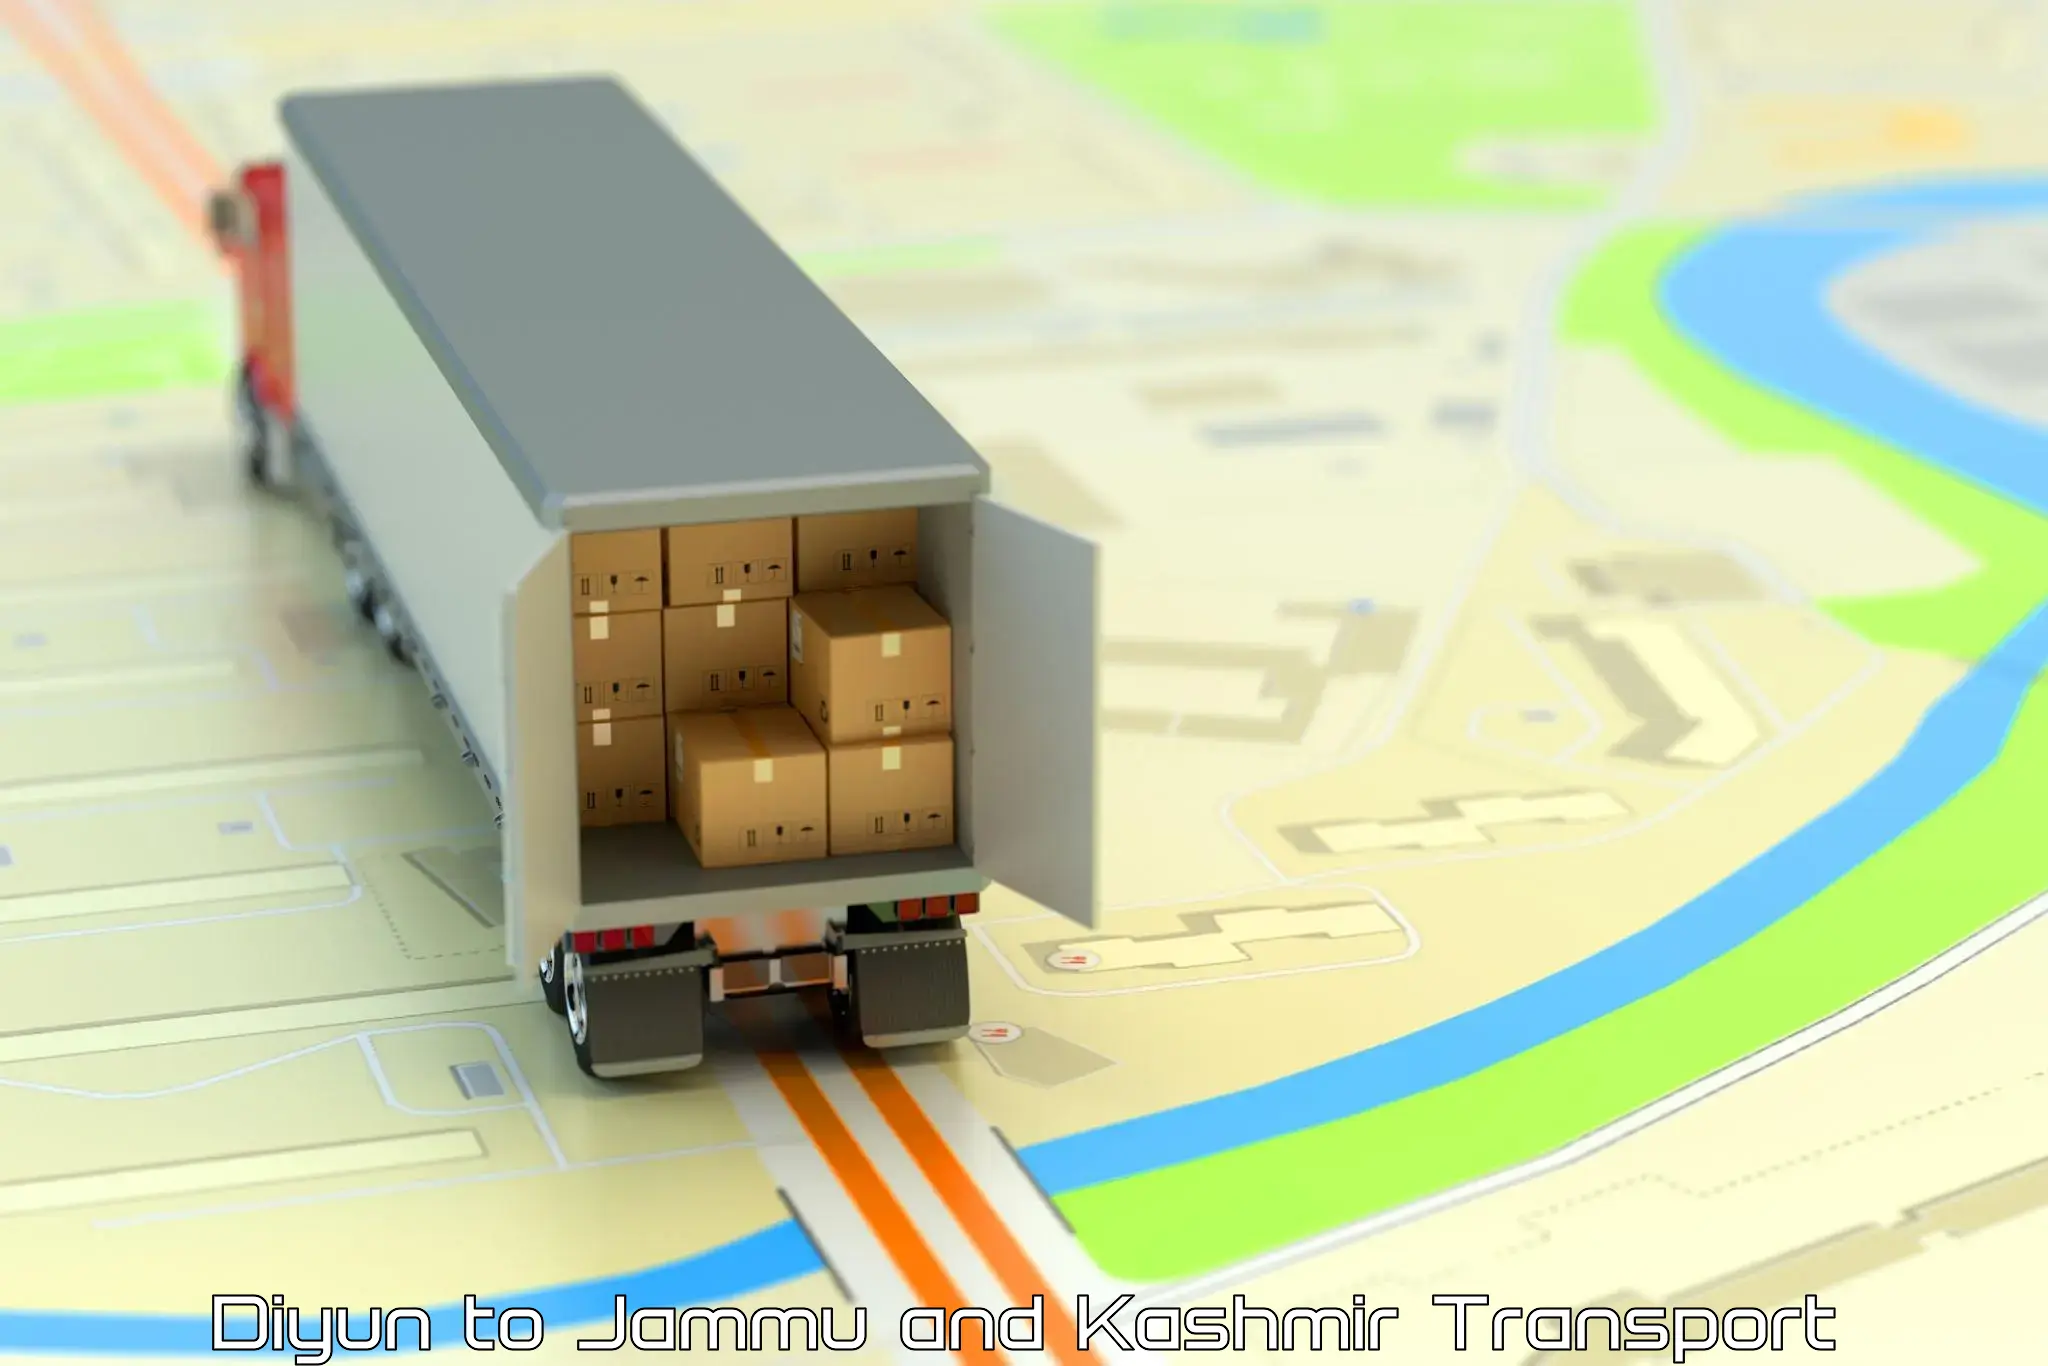 Cargo transportation services Diyun to Ramban